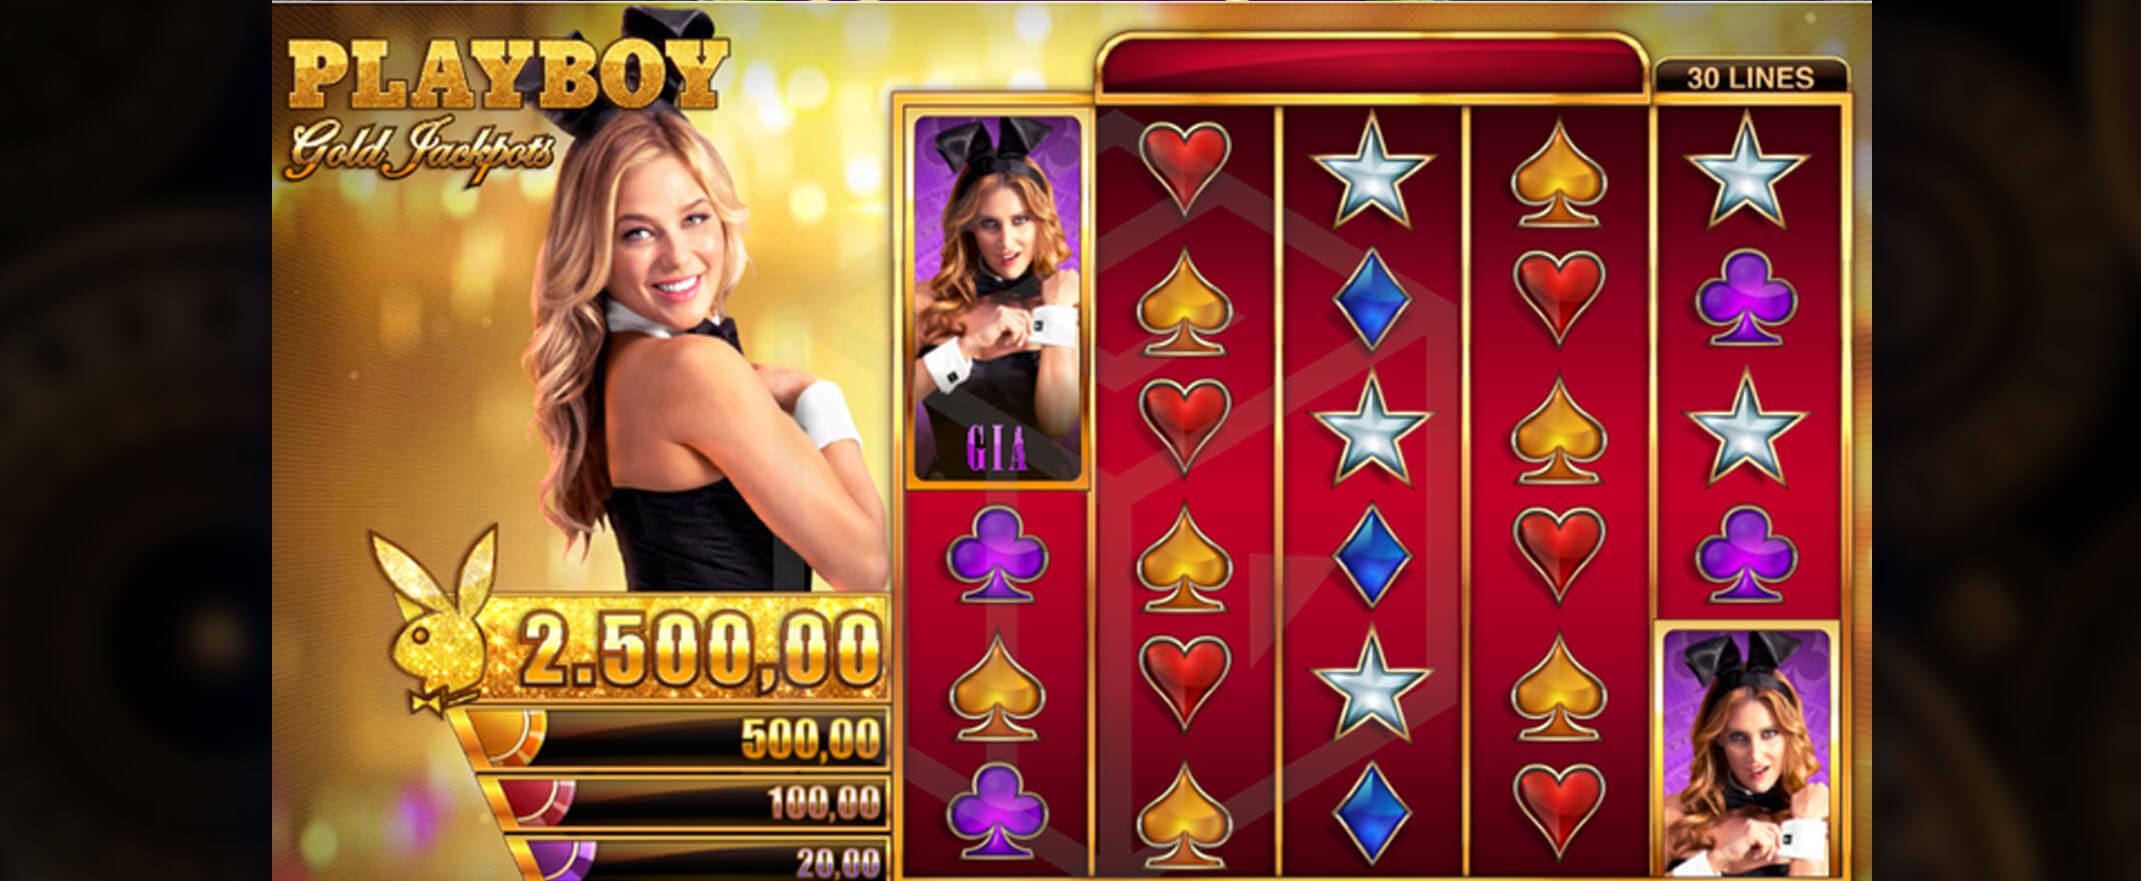 Playboy Gold Jackpots Spielautomat spielen